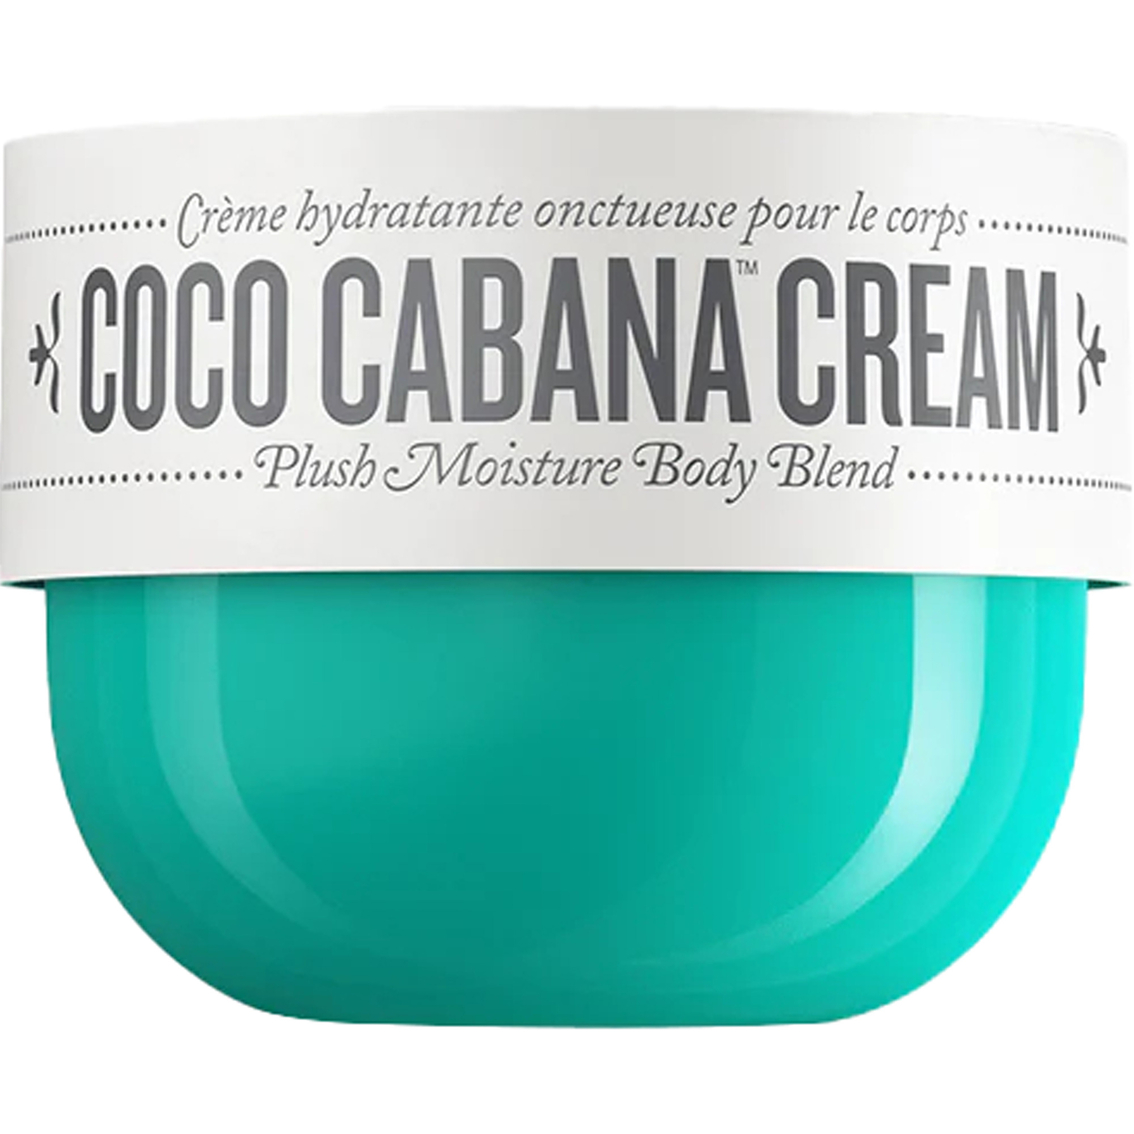 Sol de Janeiro Coco Cabana Cream 240ml